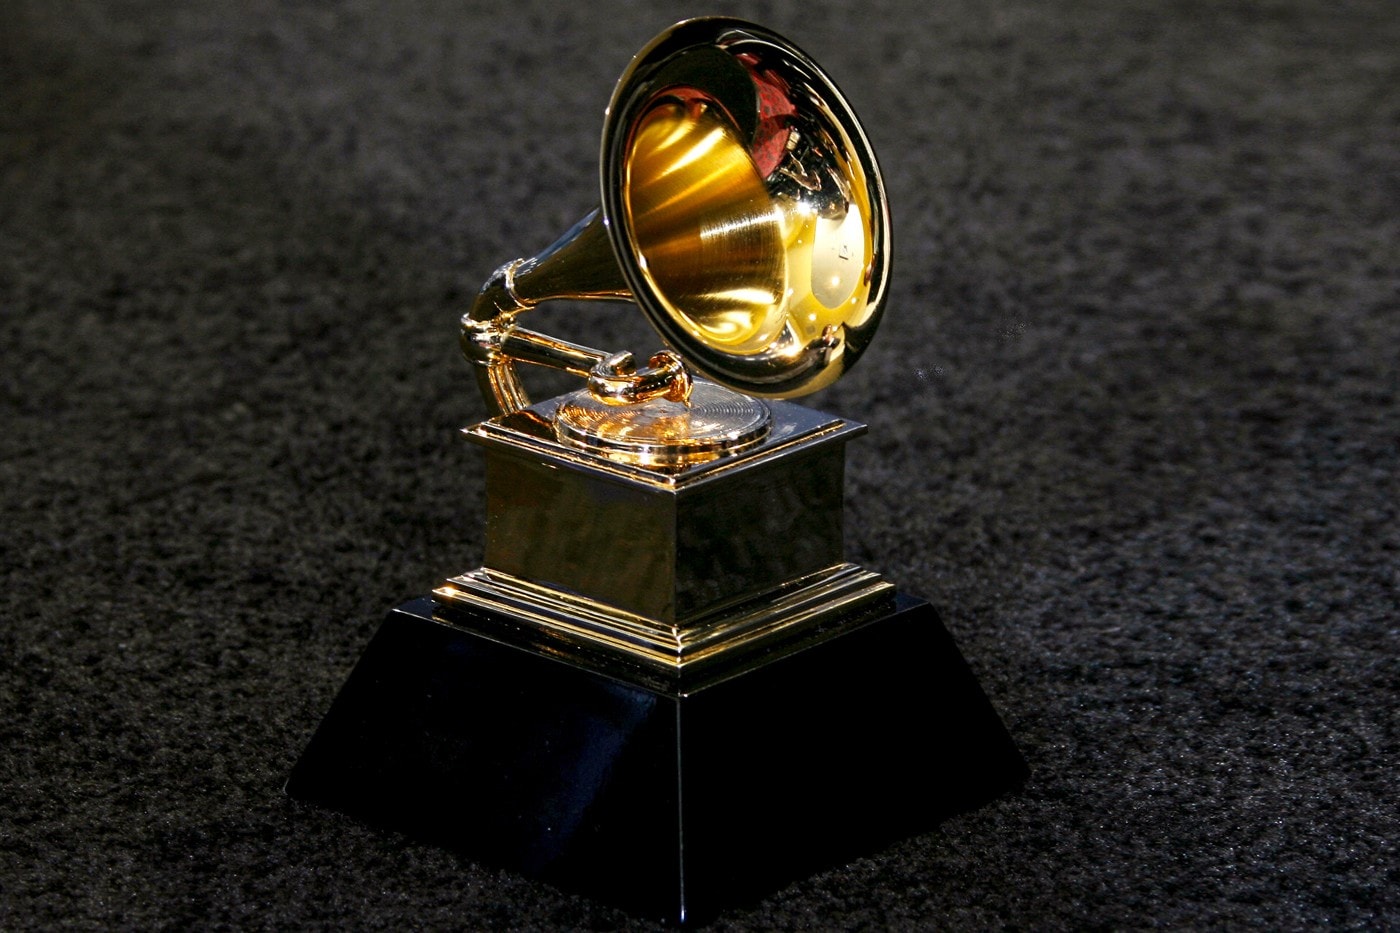 グラミー賞には早すぎた無冠のレジェンド16組 legend artists Have Never Won A Grammy Award 2Pac Snoop Dog bob marley Queen